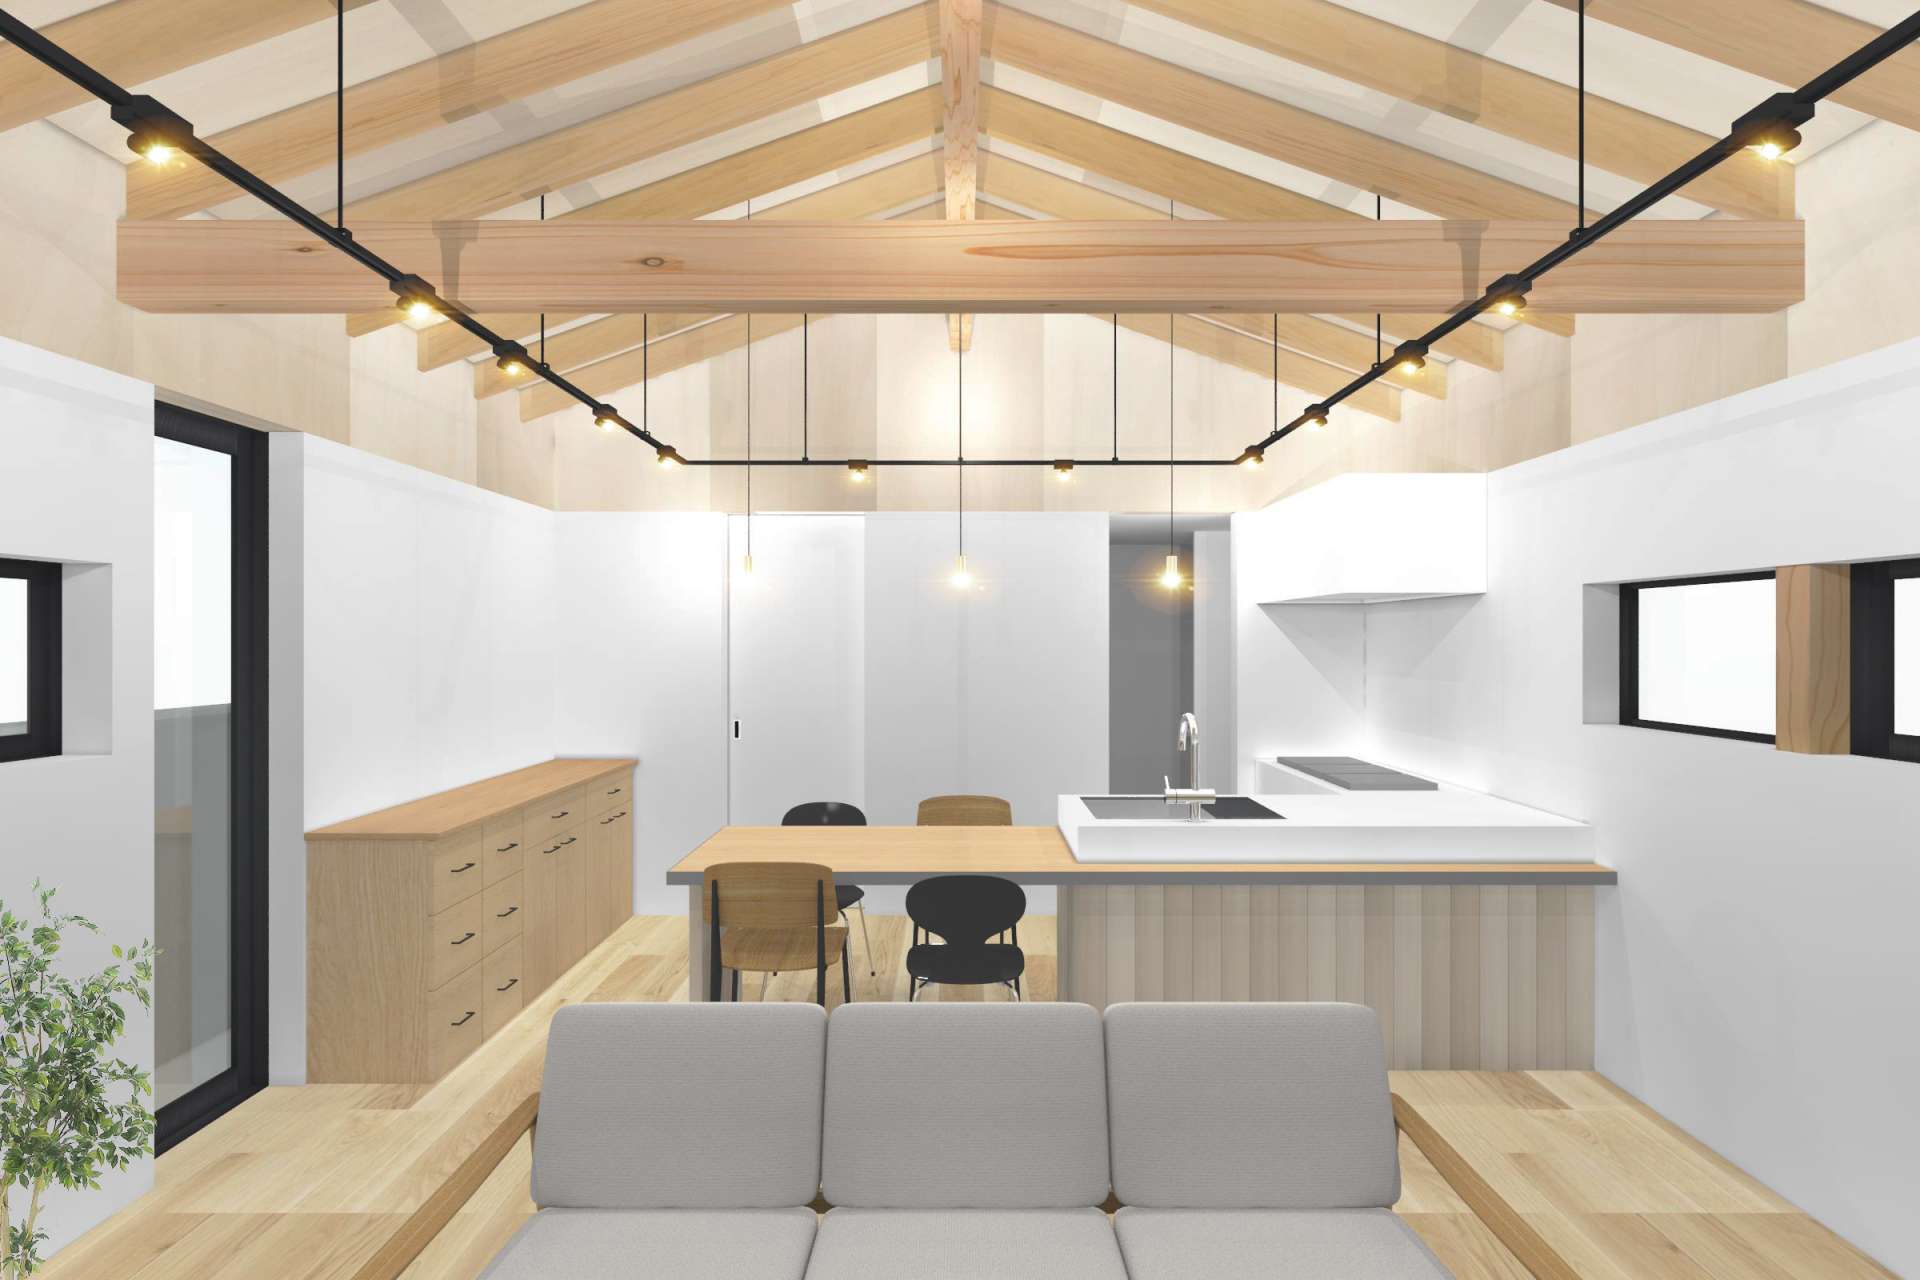 高槻市でおしゃれな注文住宅、デザイン住宅の住宅設計をお考えの方は_asazu design office